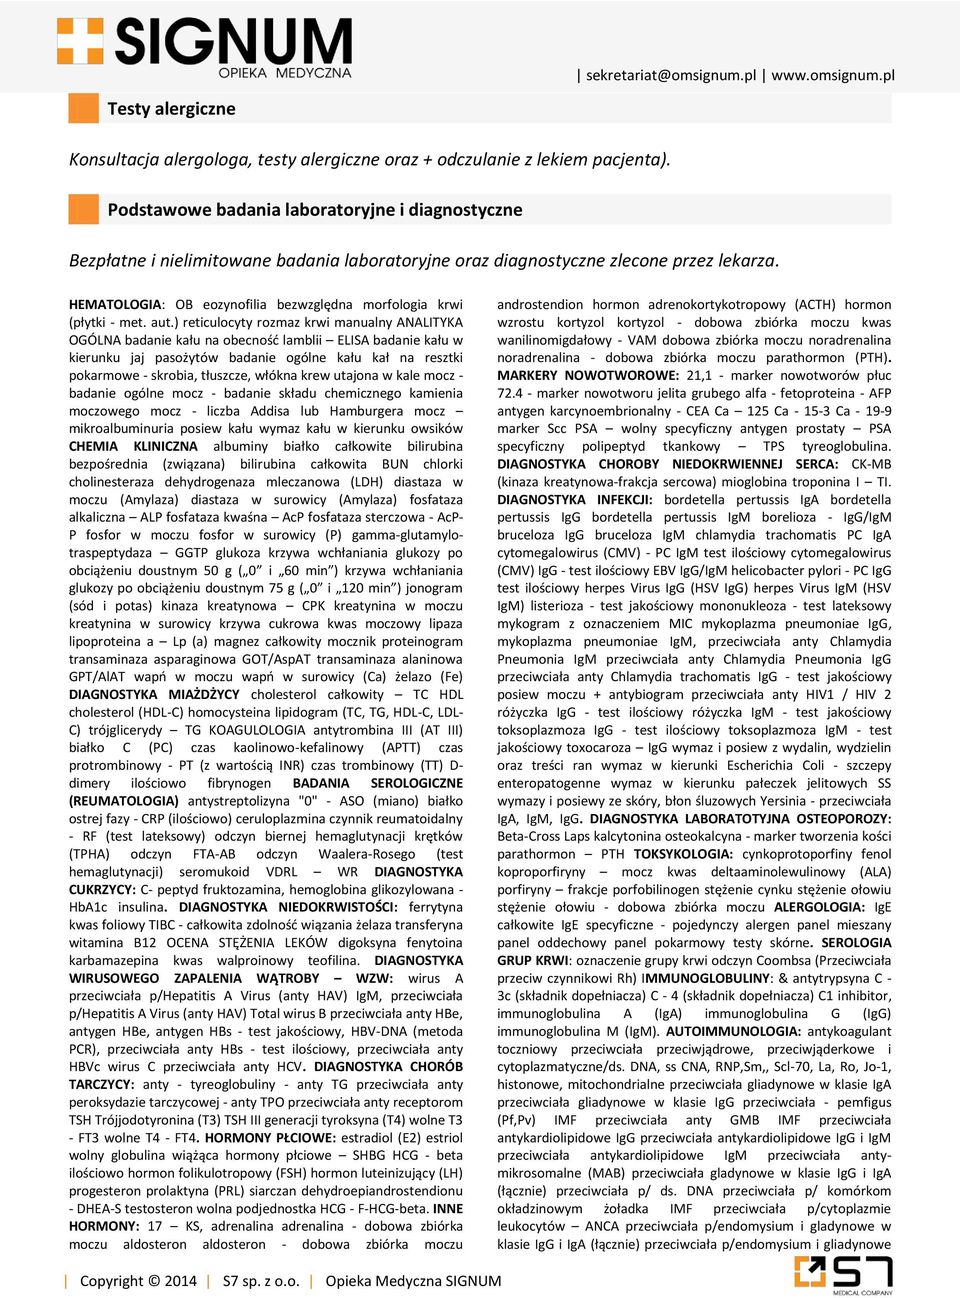 HEMATOLOGIA: OB eozynofilia bezwzględna morfologia krwi (płytki - met. aut.